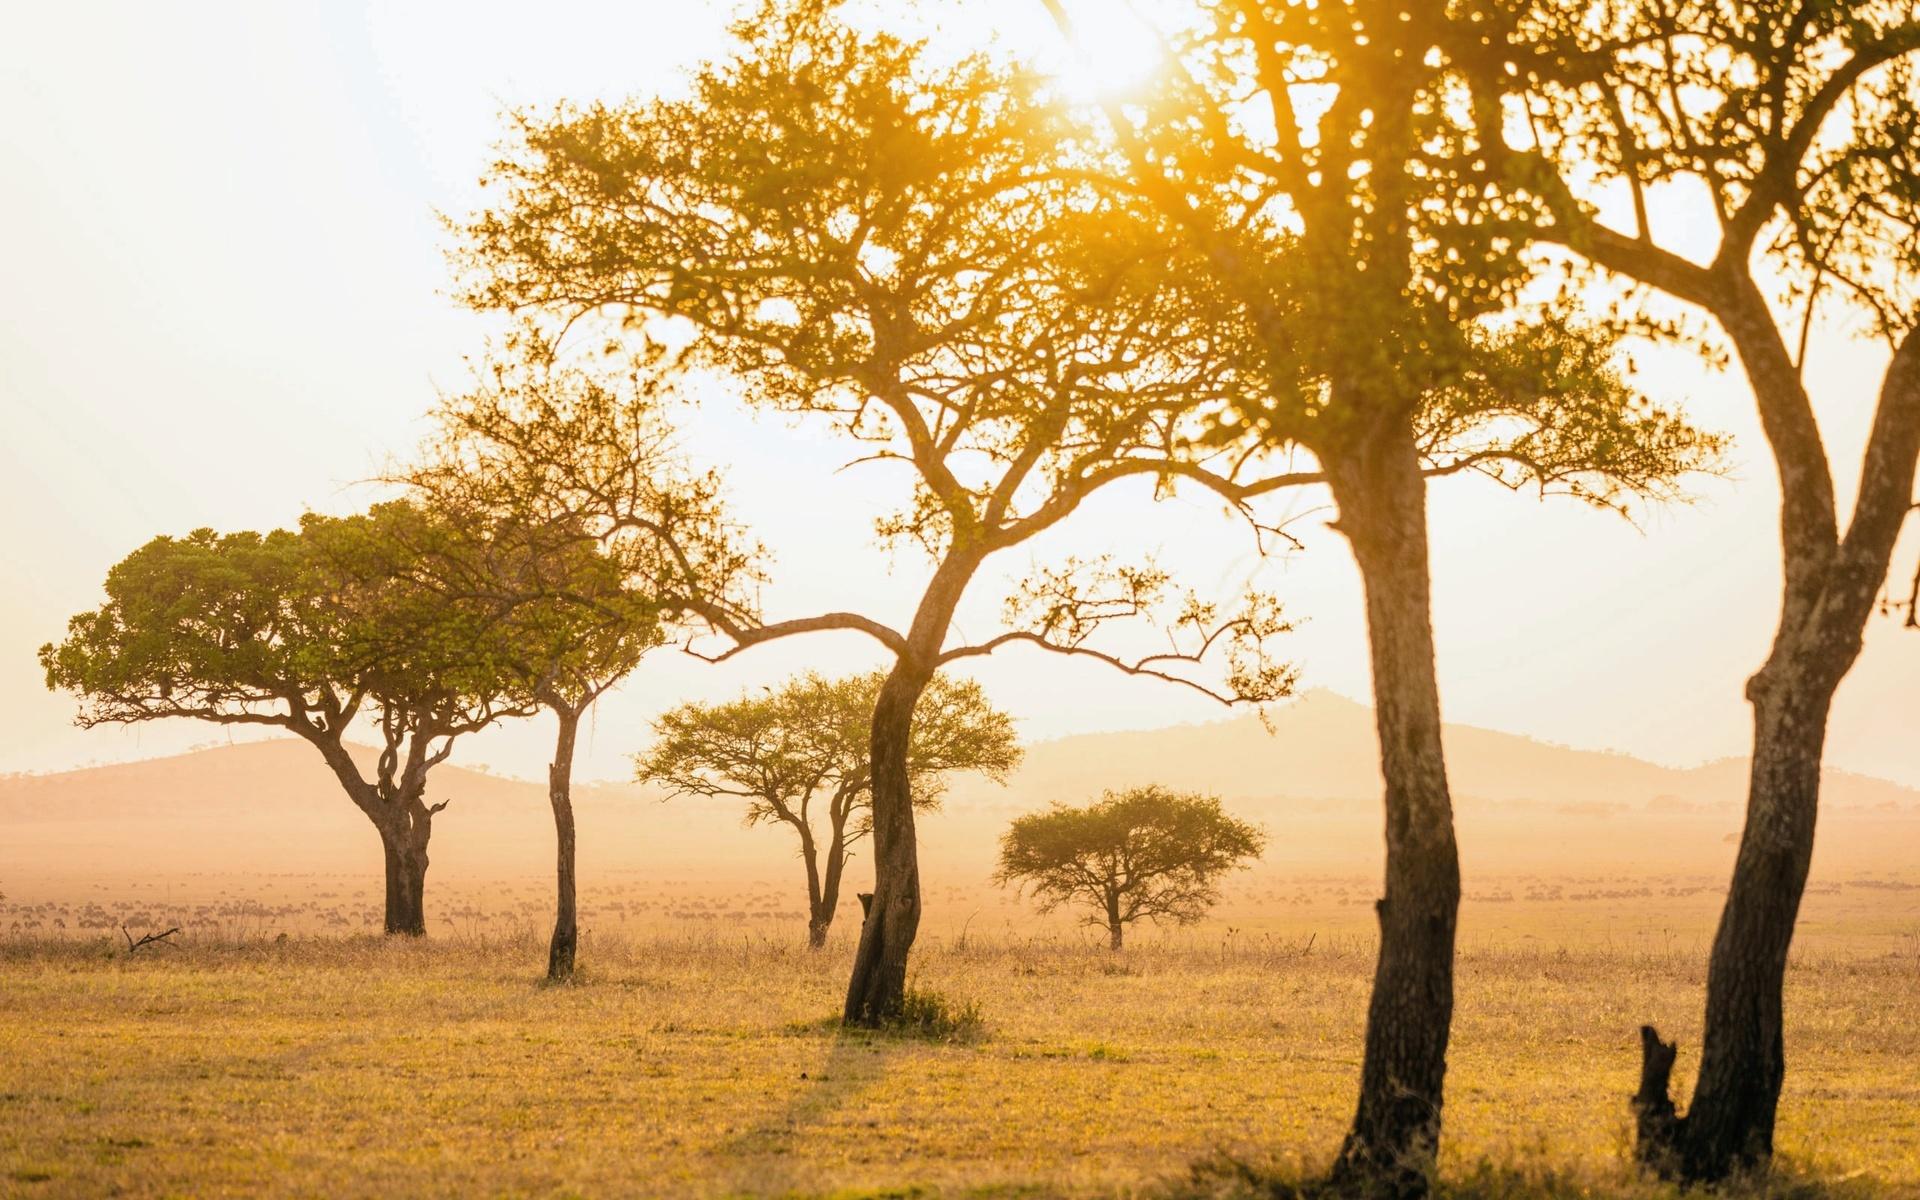 Reseföretaget Singita har 15 tältlodger i södra Afrika, ordet Singita betyder ungefär ”en plats för mirakel”. Välorganiserad och medveten safari anses i dag av många organisationer som en viktig del i arbetet med att skydda den vilda naturen och de vilda djurens habitat.